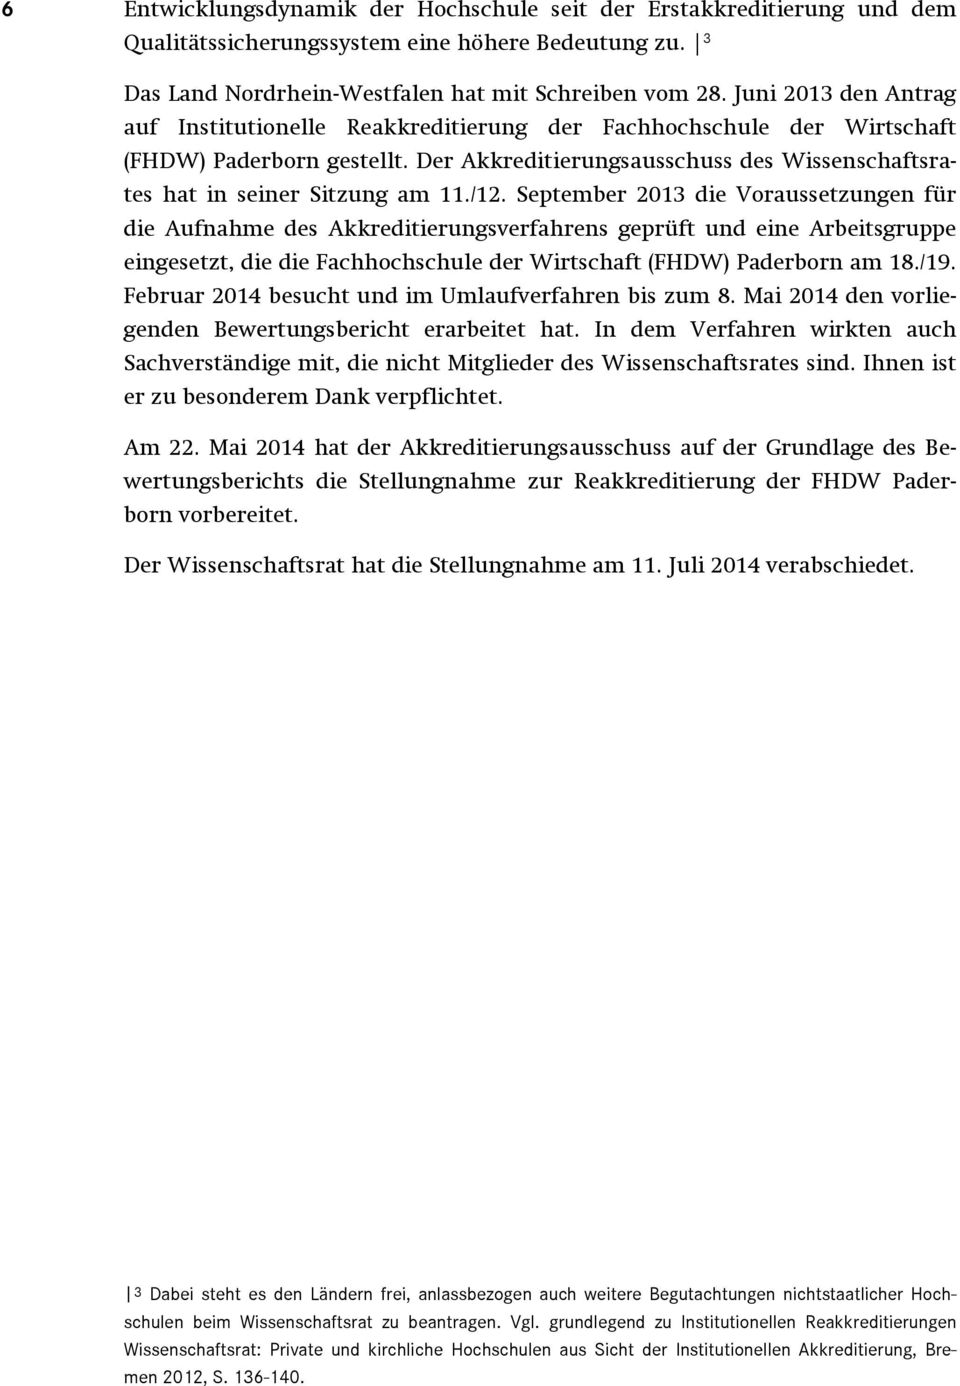 /12. September 2013 die Voraussetzungen für die Aufnahme des Akkreditierungsverfahrens geprüft und eine Arbeitsgruppe eingesetzt, die die Fachhochschule der Wirtschaft (FHDW) Paderborn am 18./19.